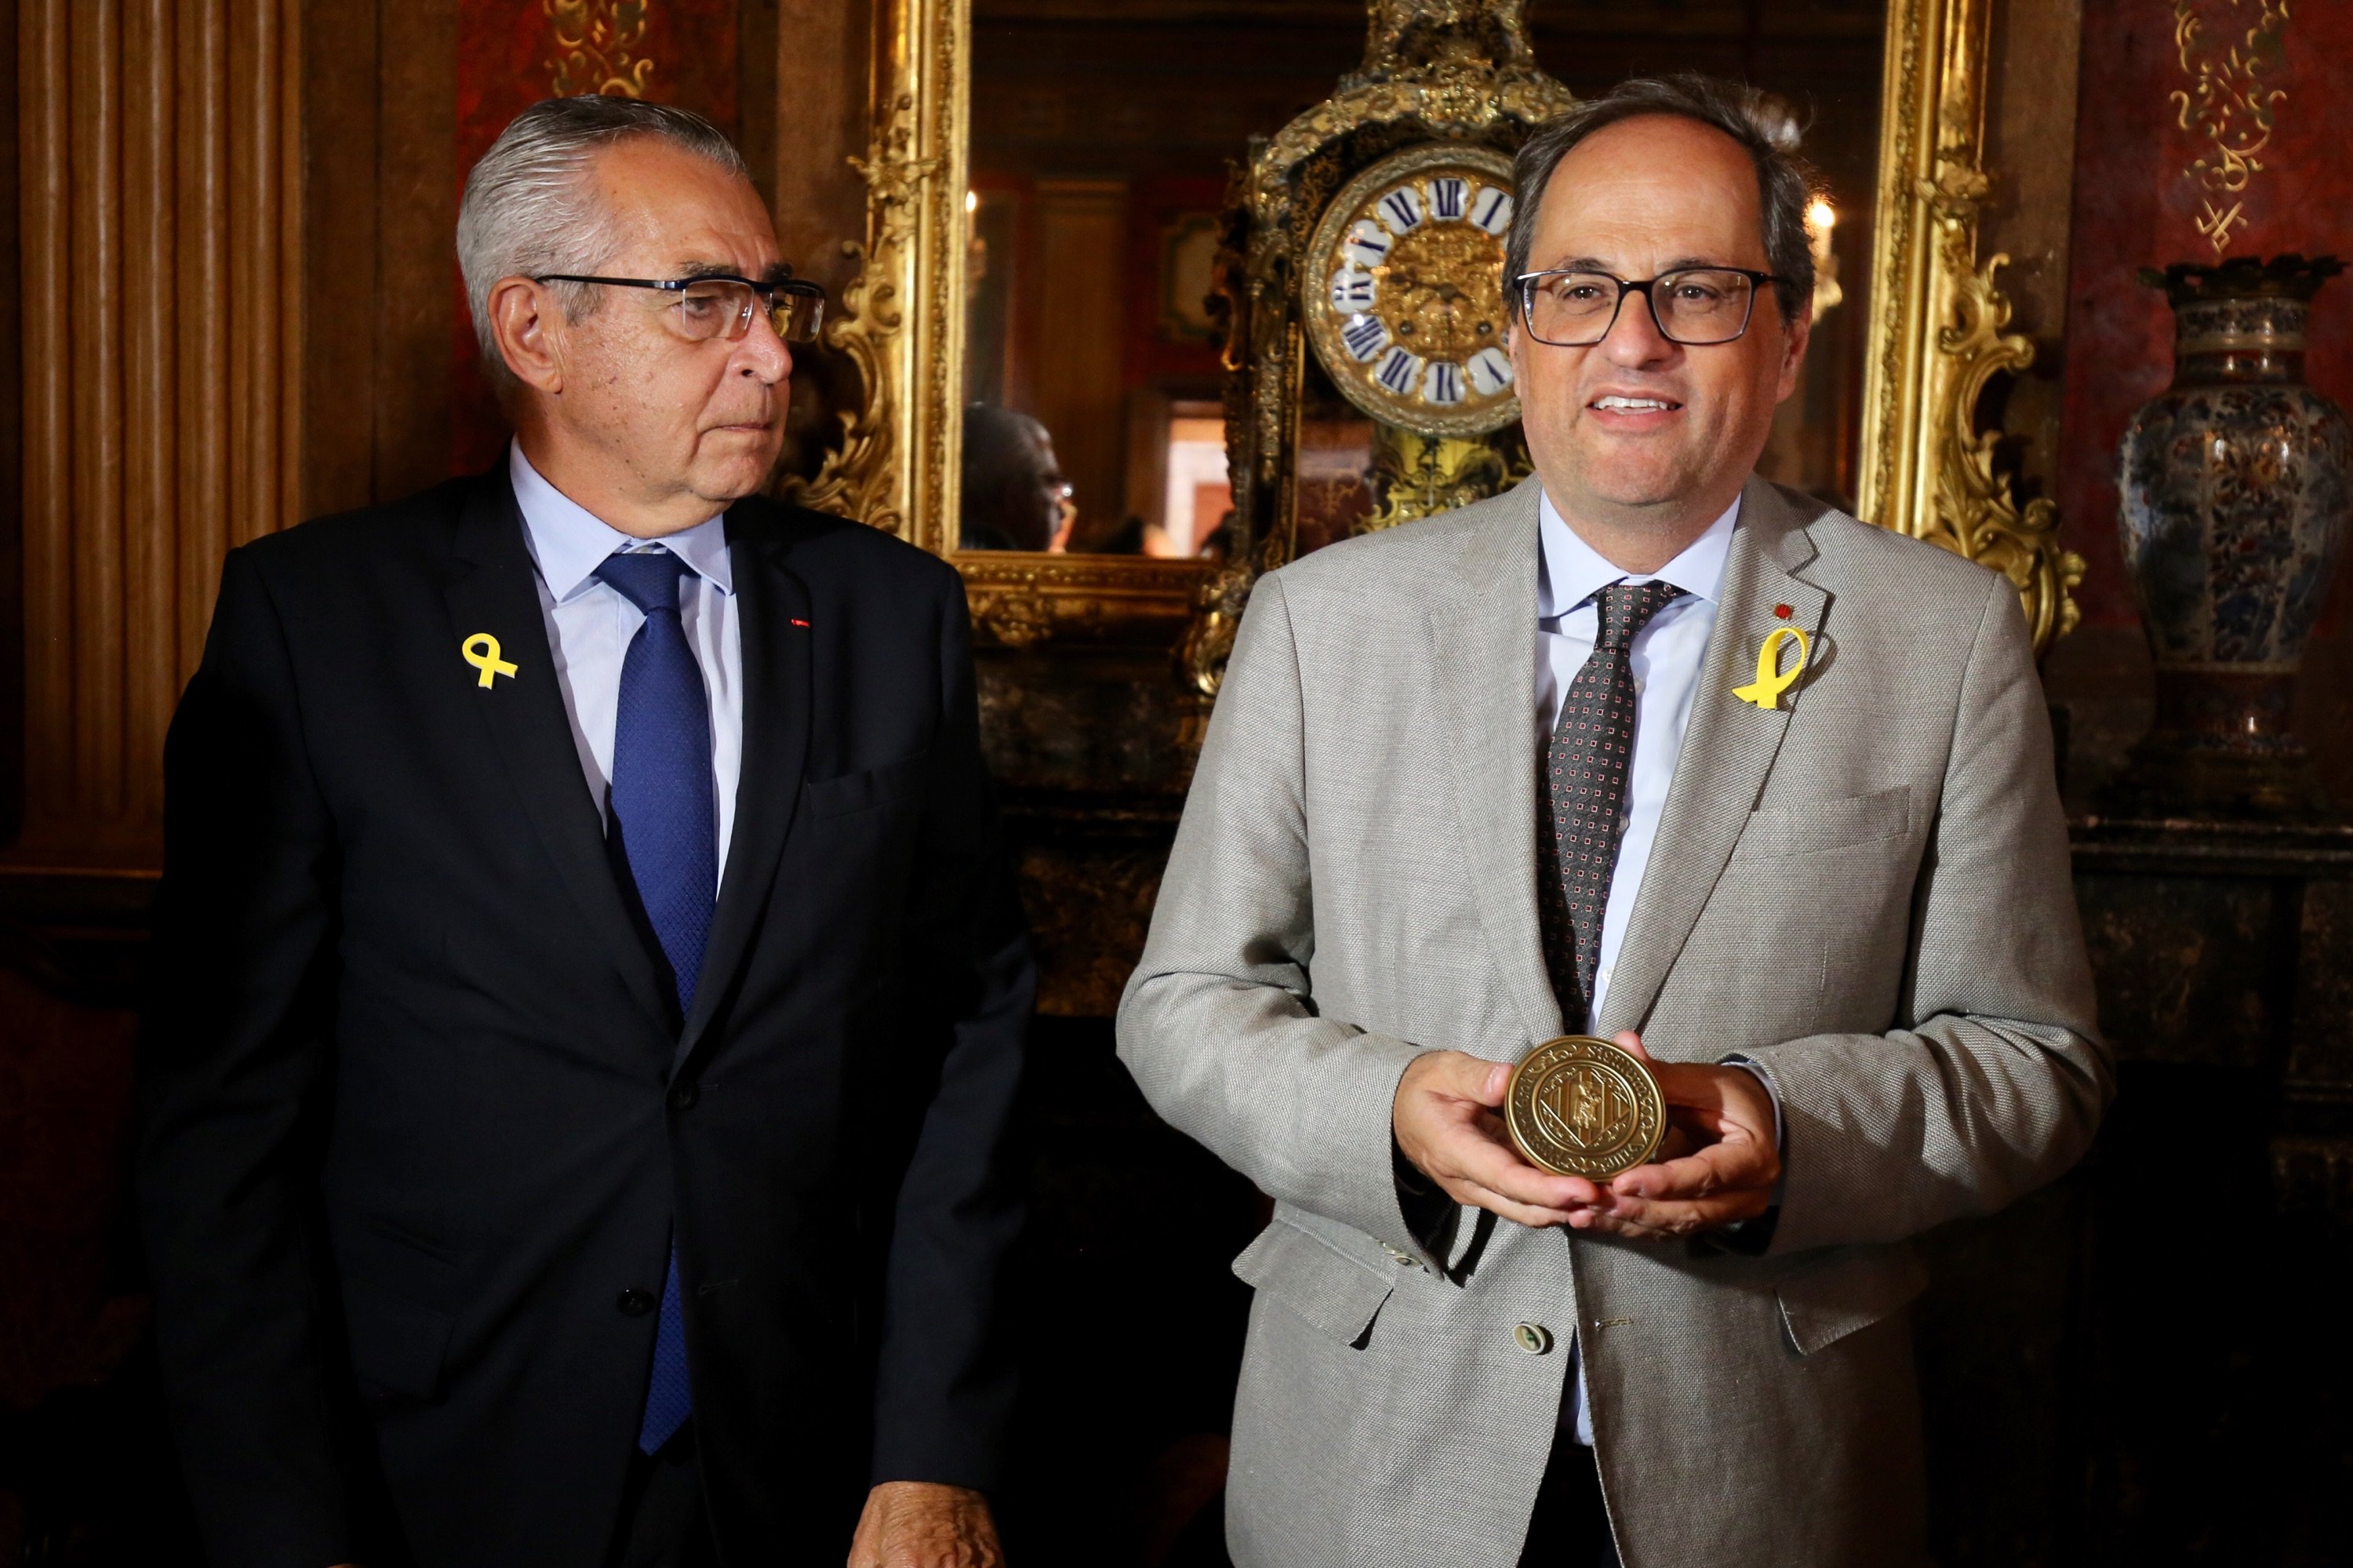 El alcalde de Perpinyà recibe al president Torra con un lazo amarillo